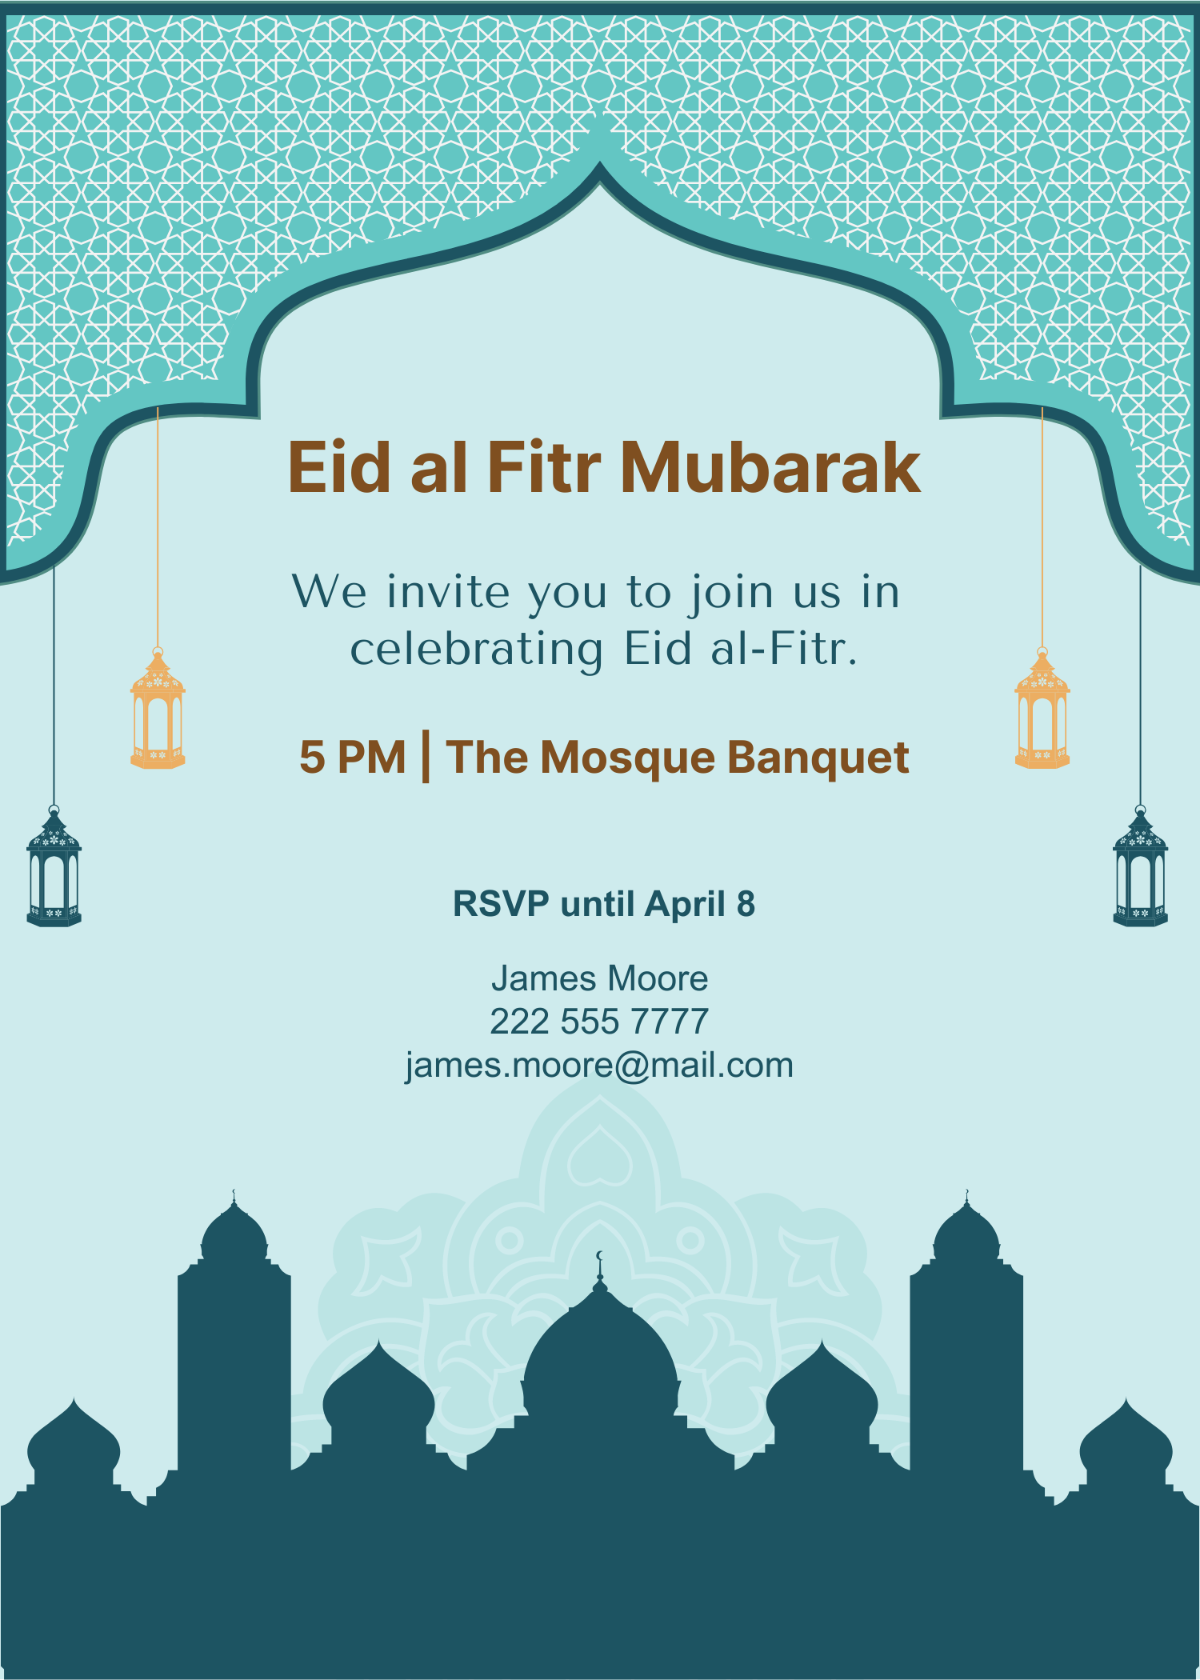 Eid al Fitr Mubarak Invitation